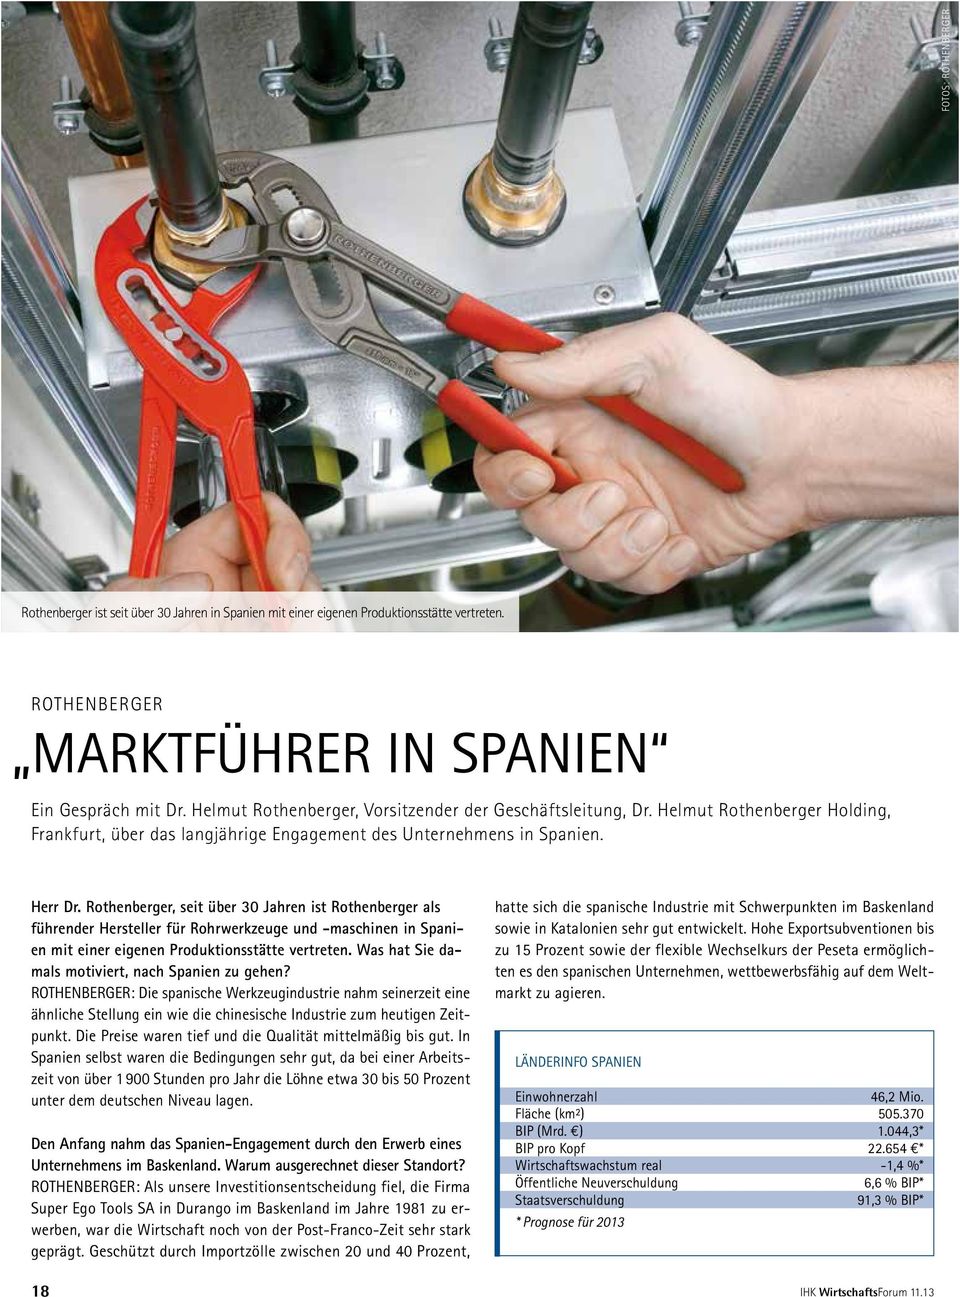 Rothenberger, seit über 30 Jahren ist Rothenberger als führender Hersteller für Rohrwerkzeuge und -maschinen in Spanien mit einer eigenen Produktionsstätte vertreten.